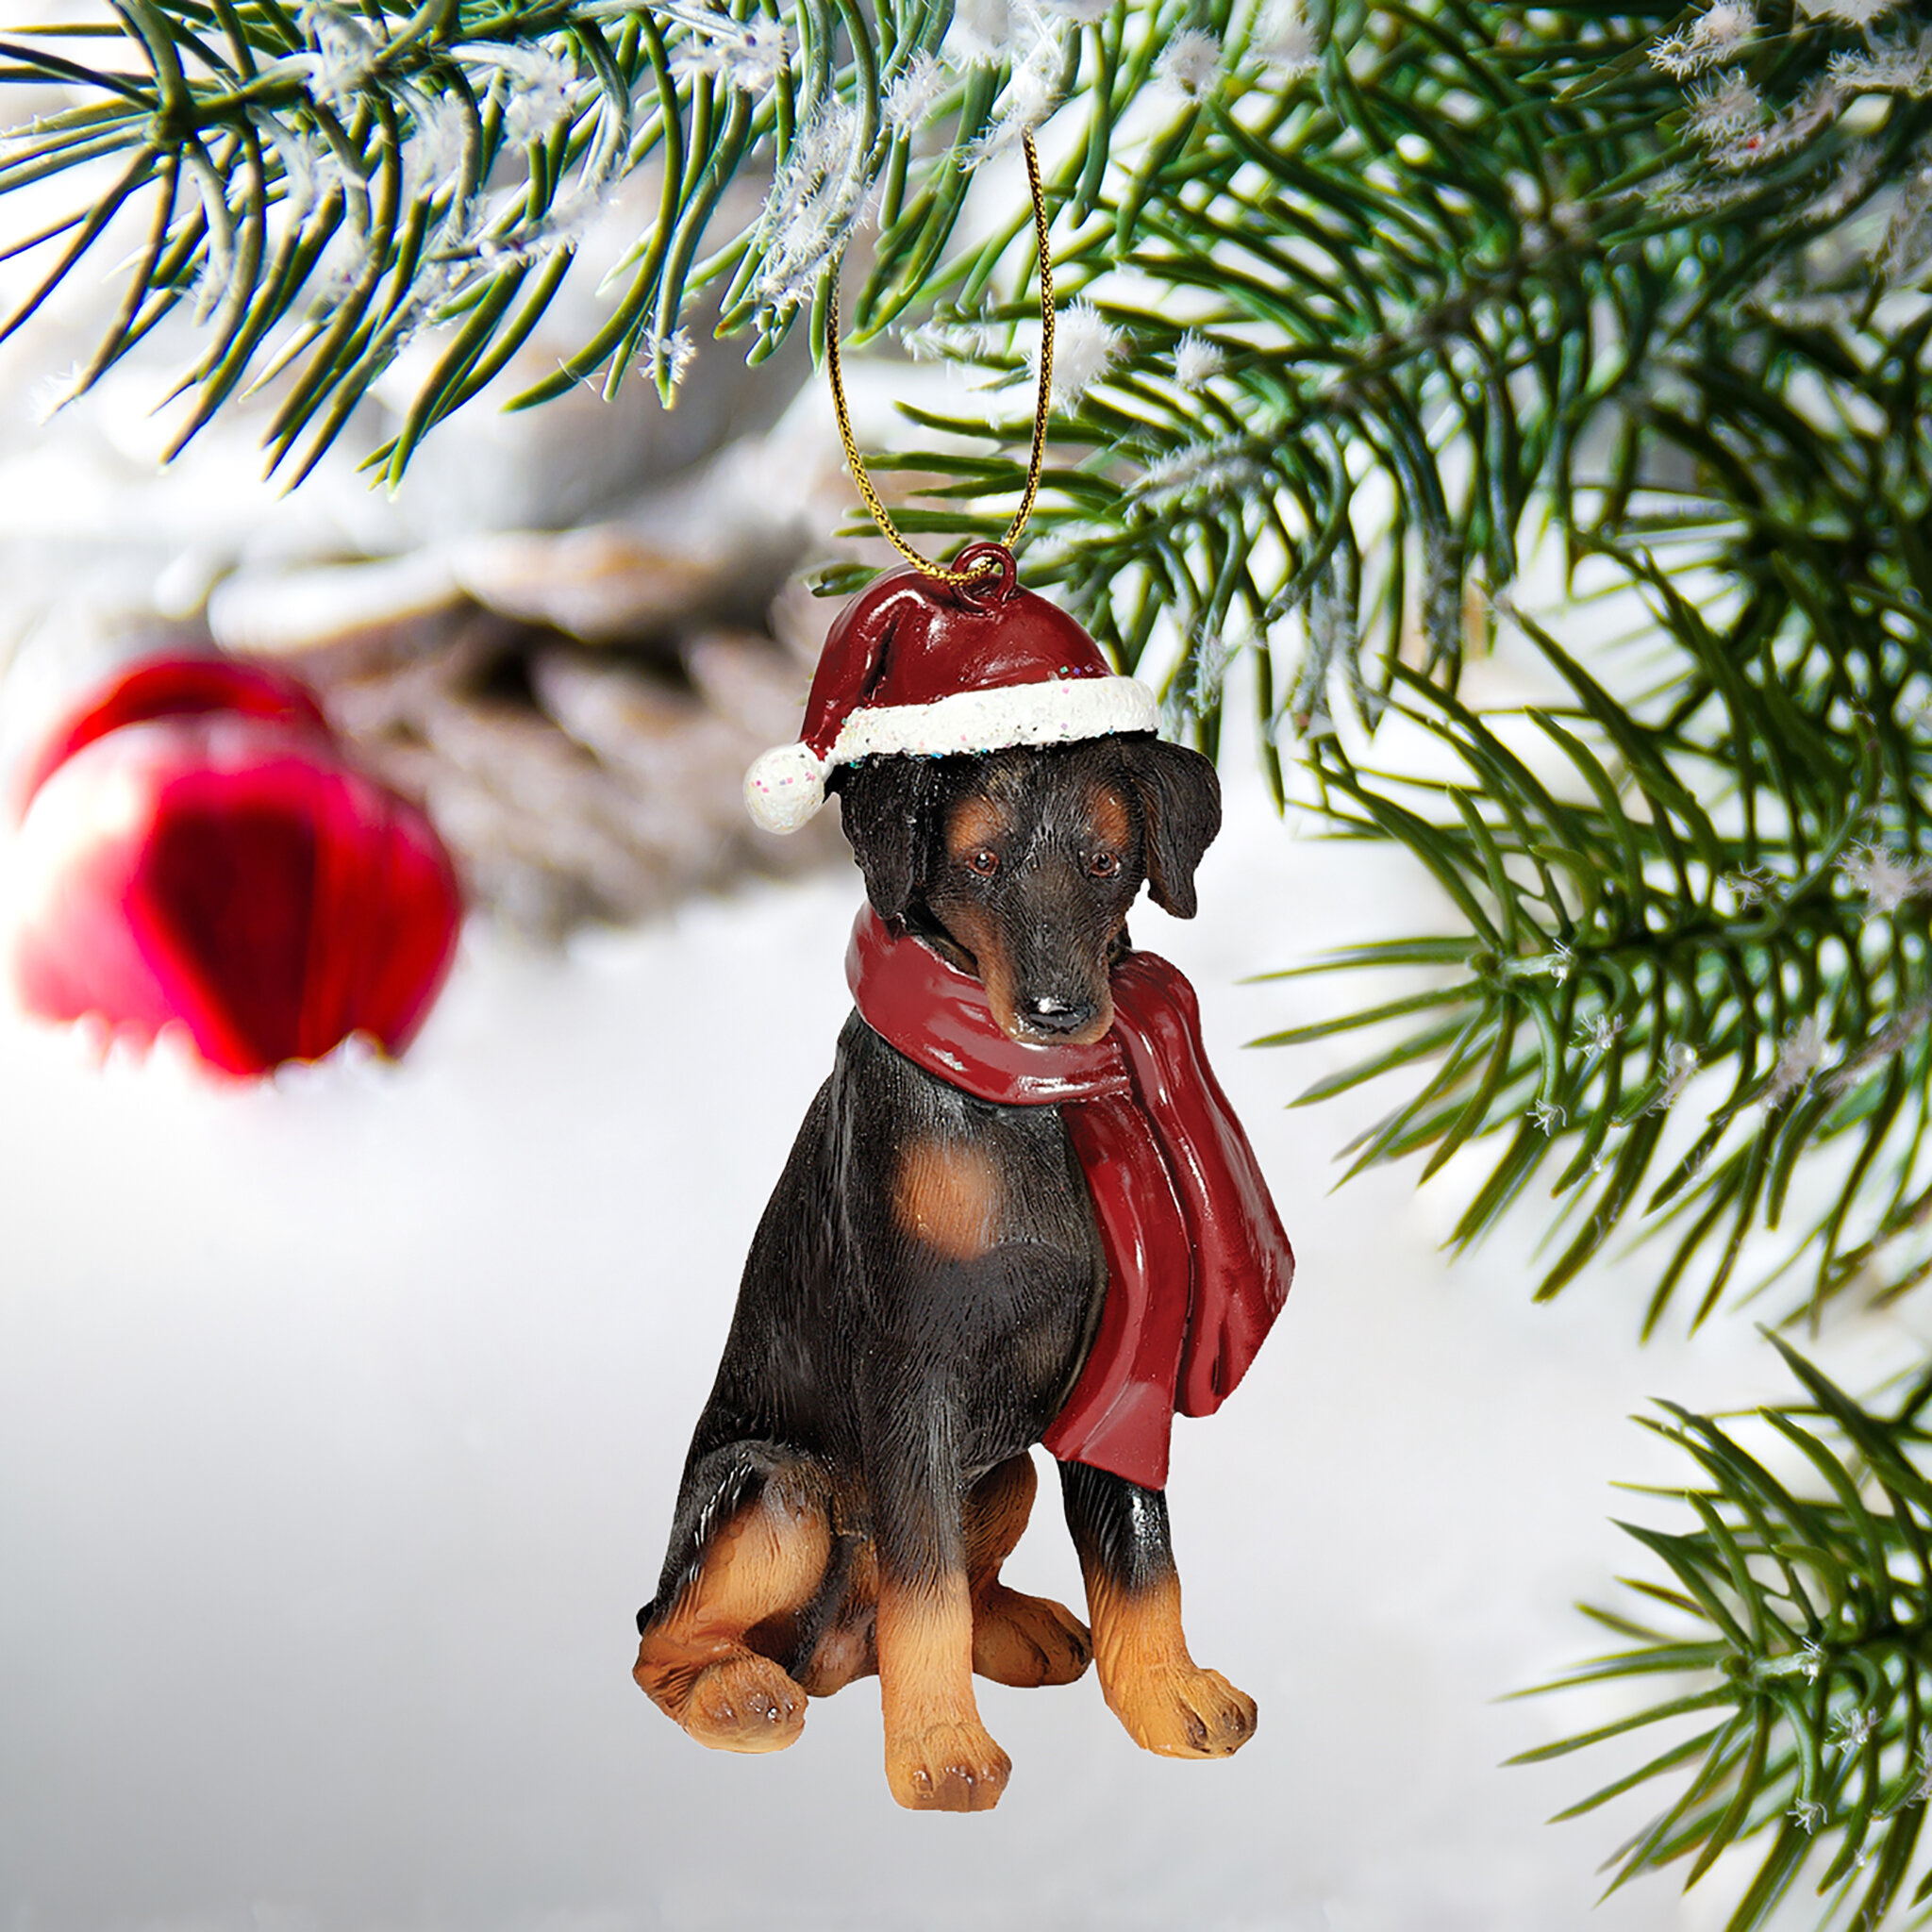 https://assets.wfcdn.com/im/77441380/compr-r85/1507/150705004/doberman-pinscher-holiday-dog-ornament-sculpture.jpg